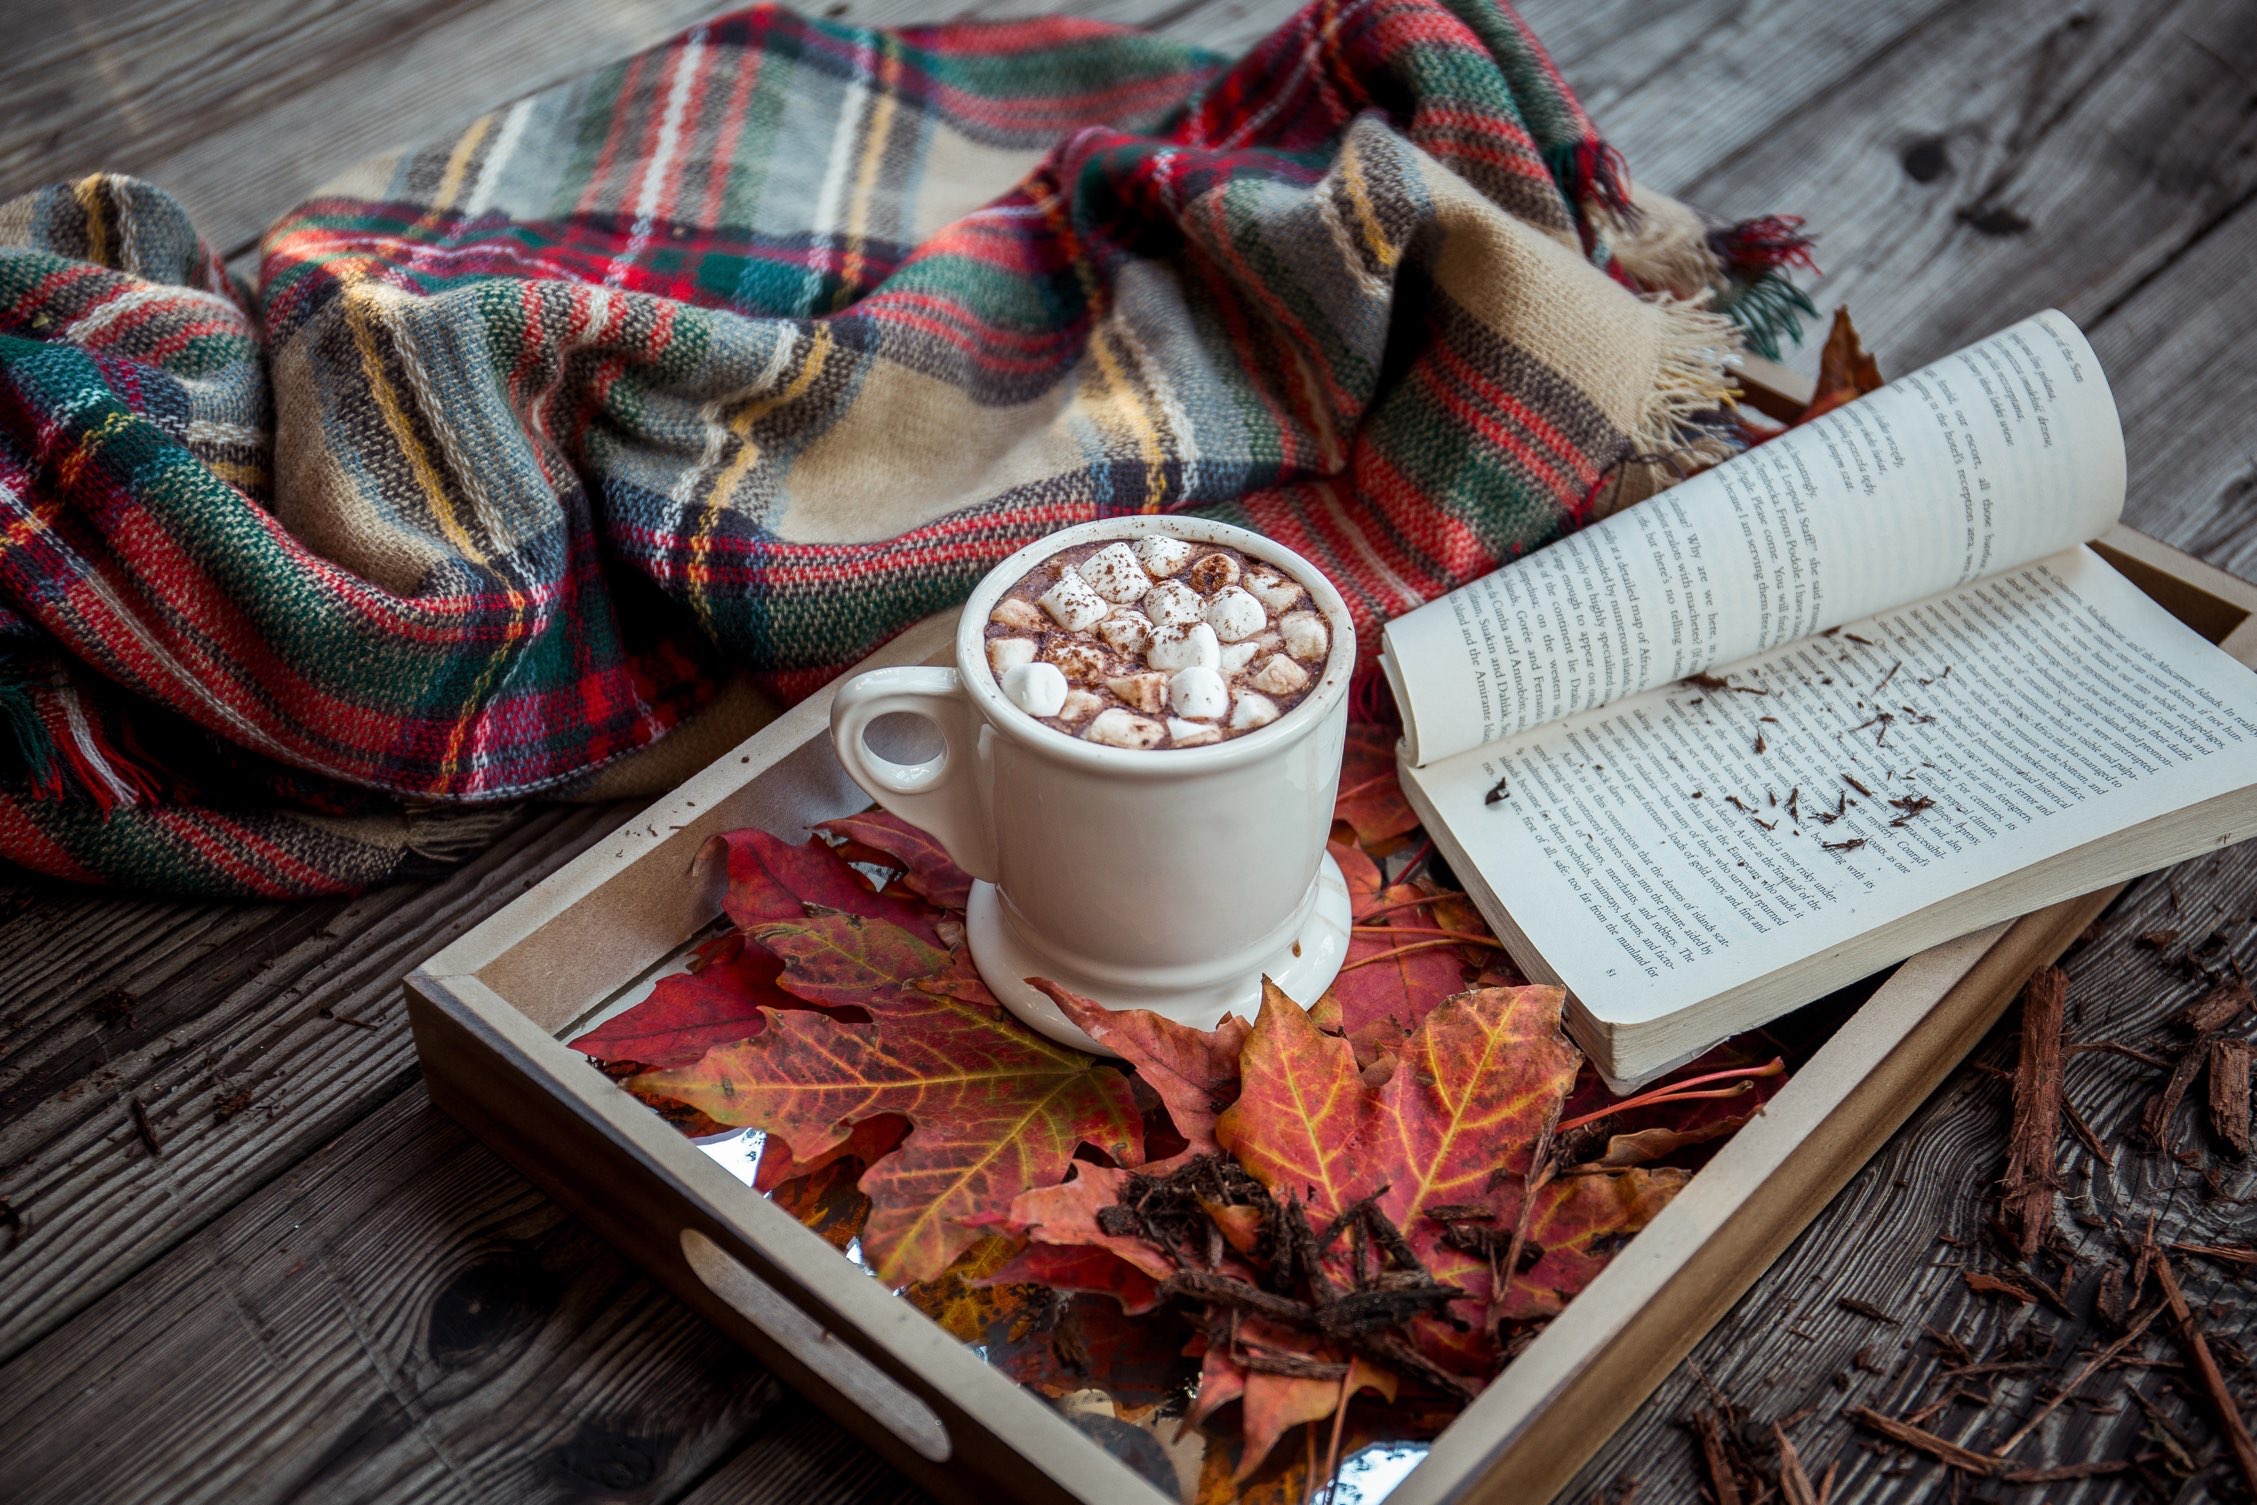 Winter Hot Chocolate